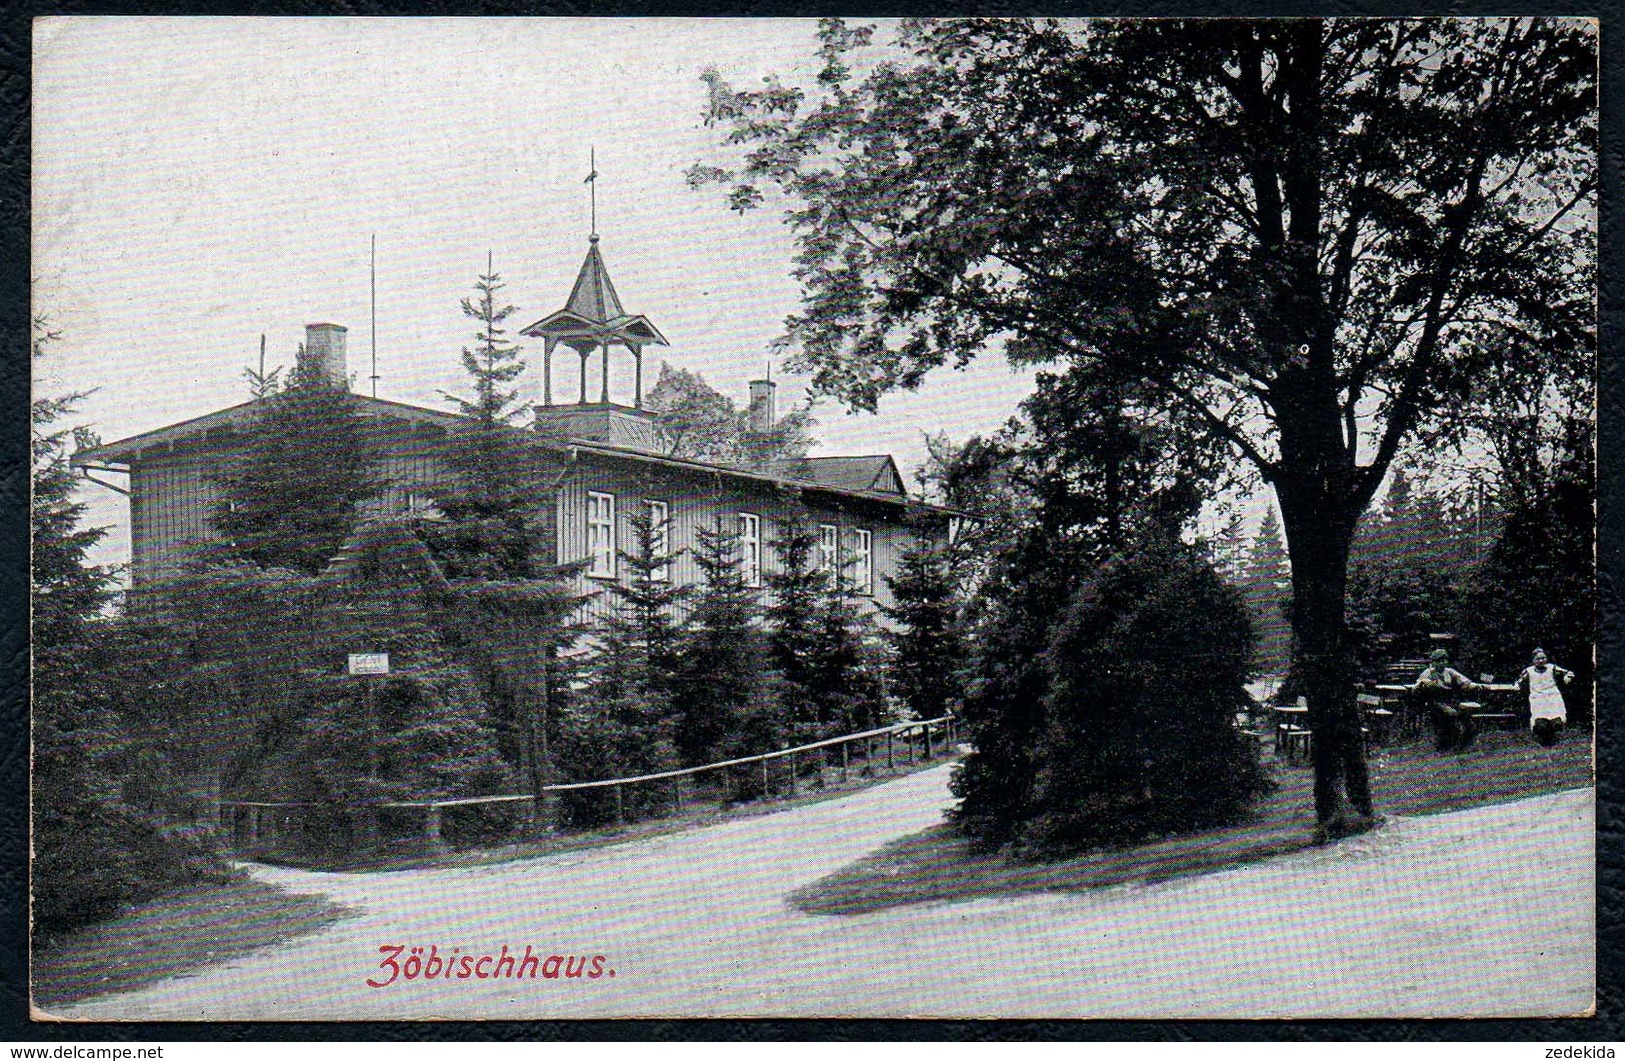 A9607 - Zöbischhaus Bei Reiboldsgrün In Auerbach - Löffler & Co - Auerbach (Vogtland)